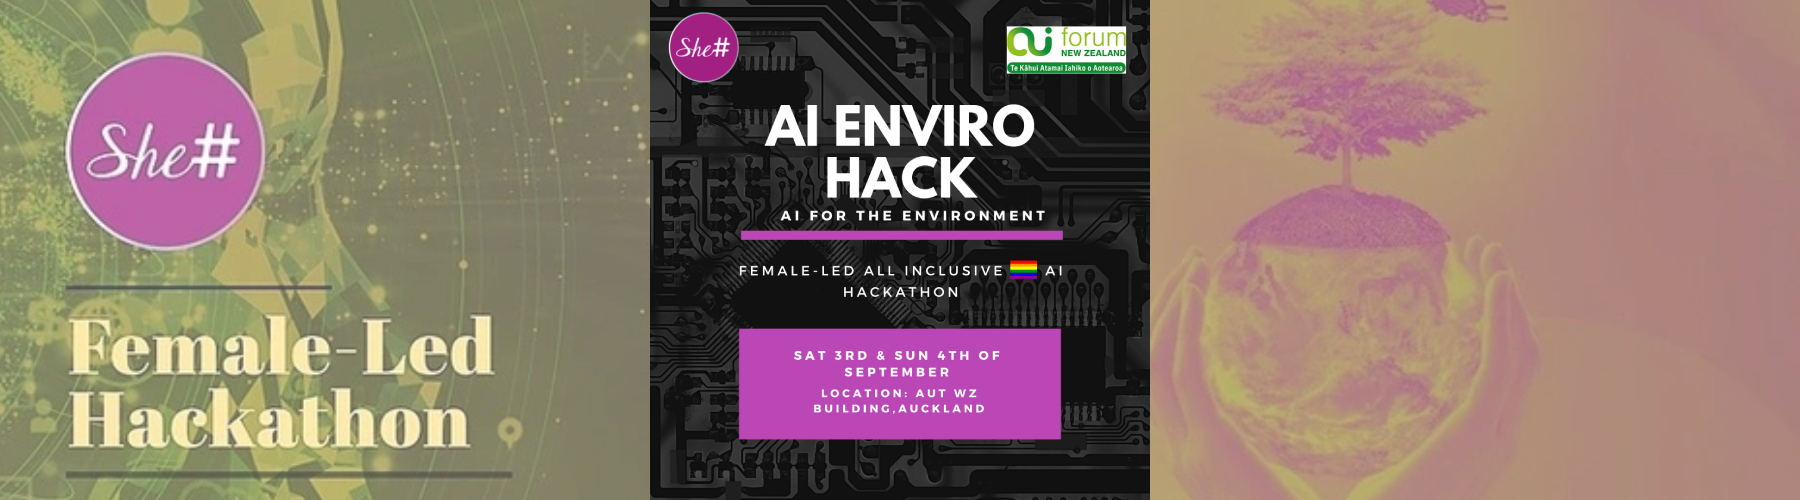 Female led hackathon